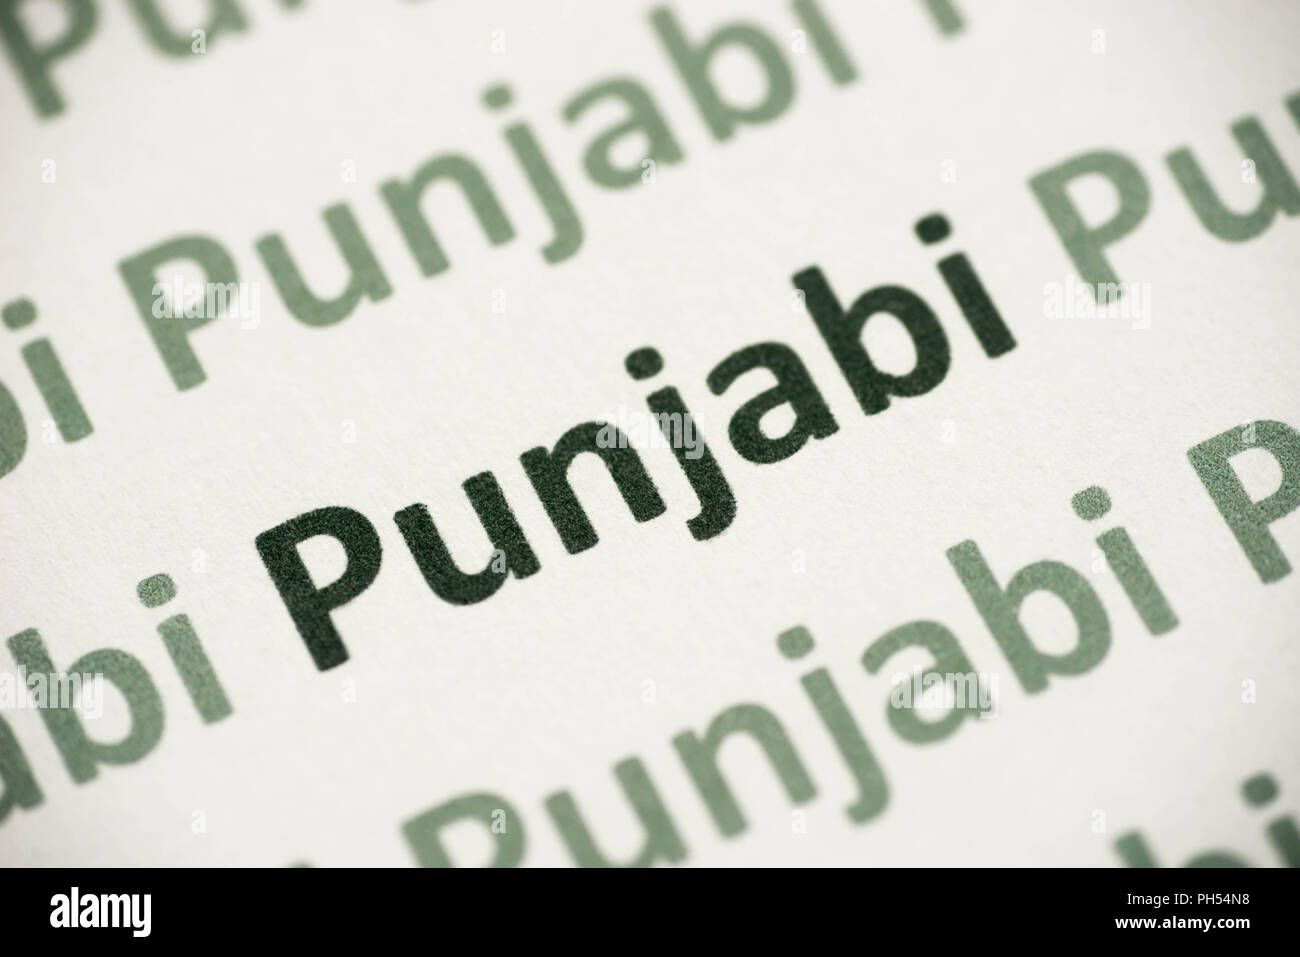 punjabi wording in punjabi font